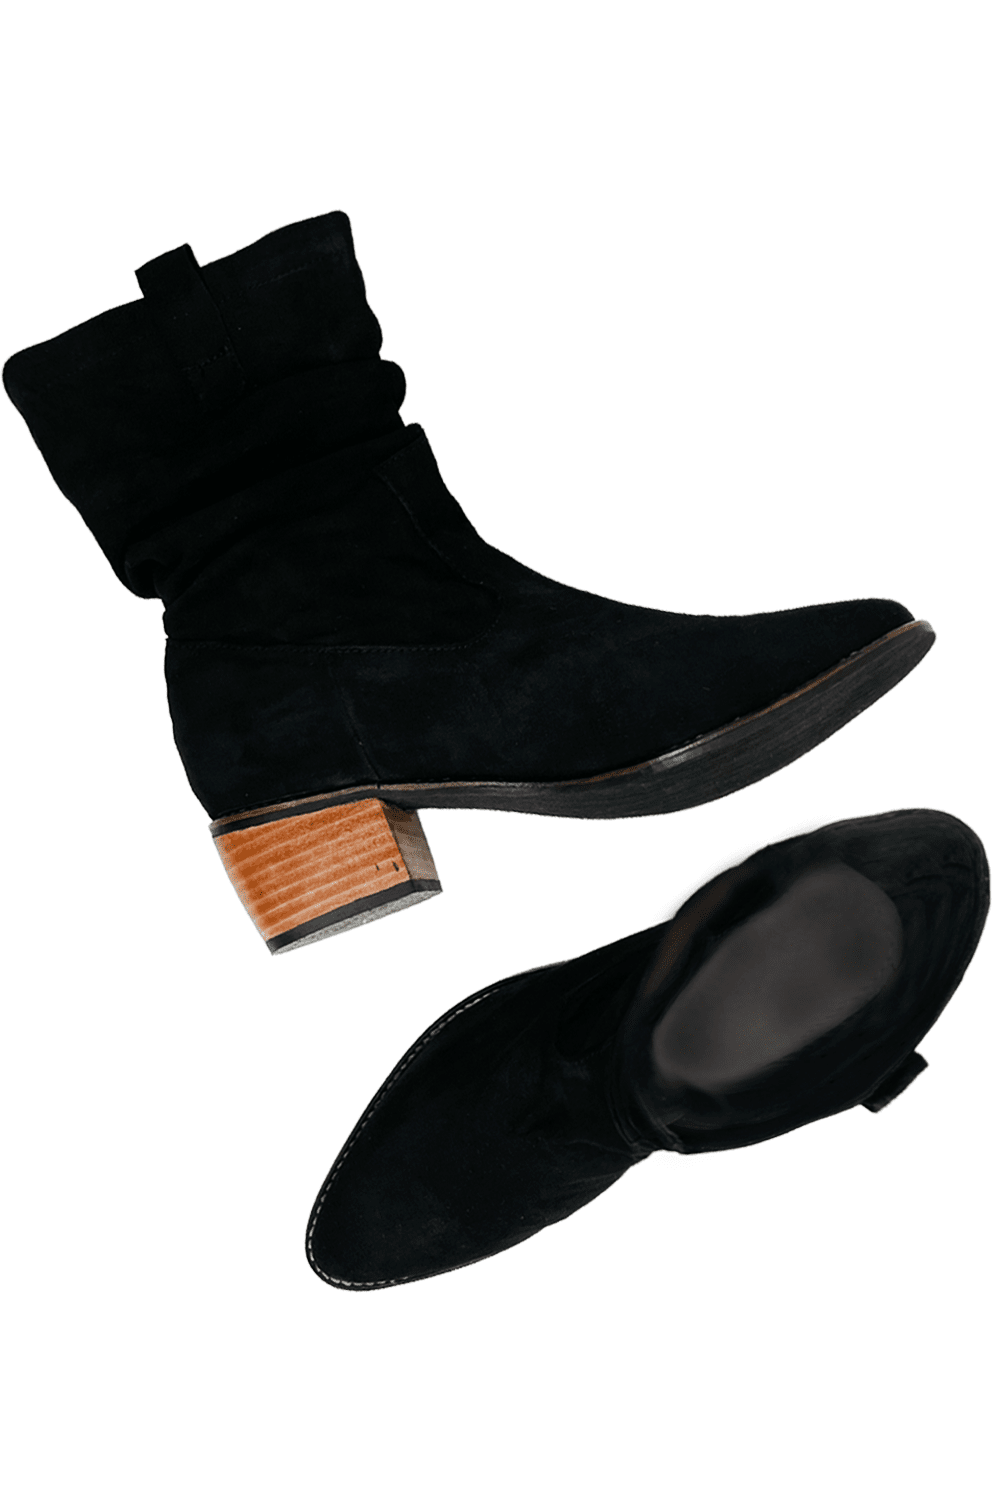 Bridgette Boots Black Suede Shoes